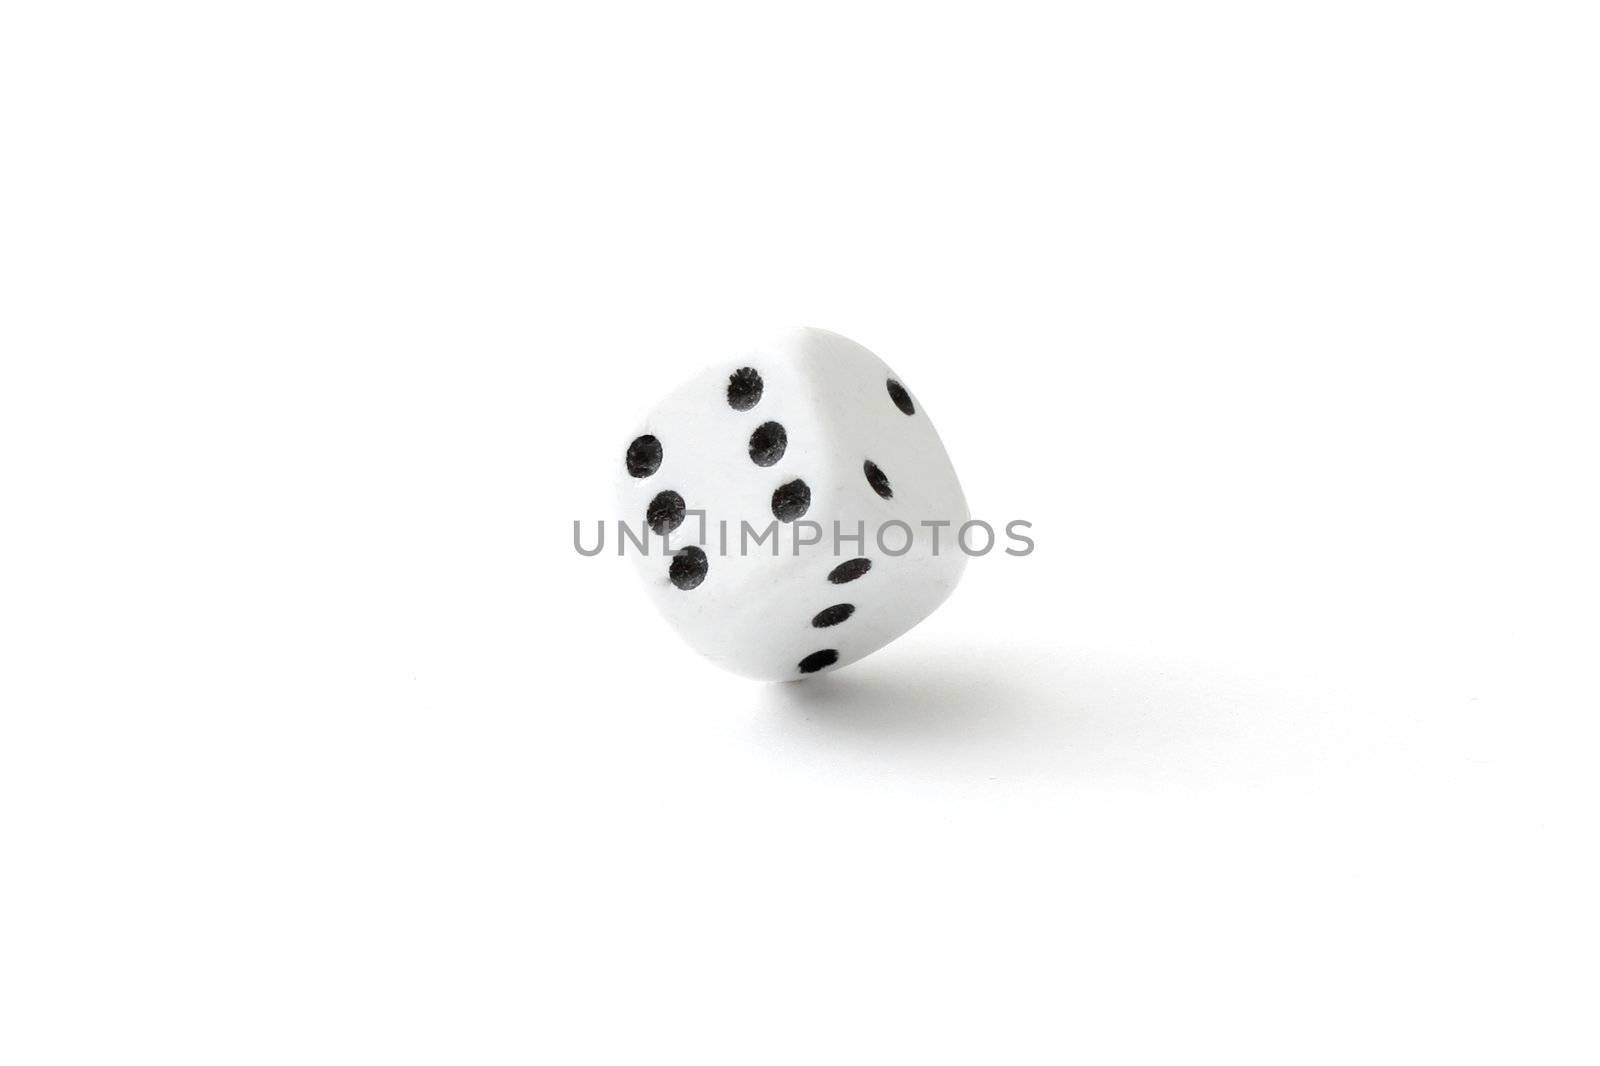 A dice in a studio